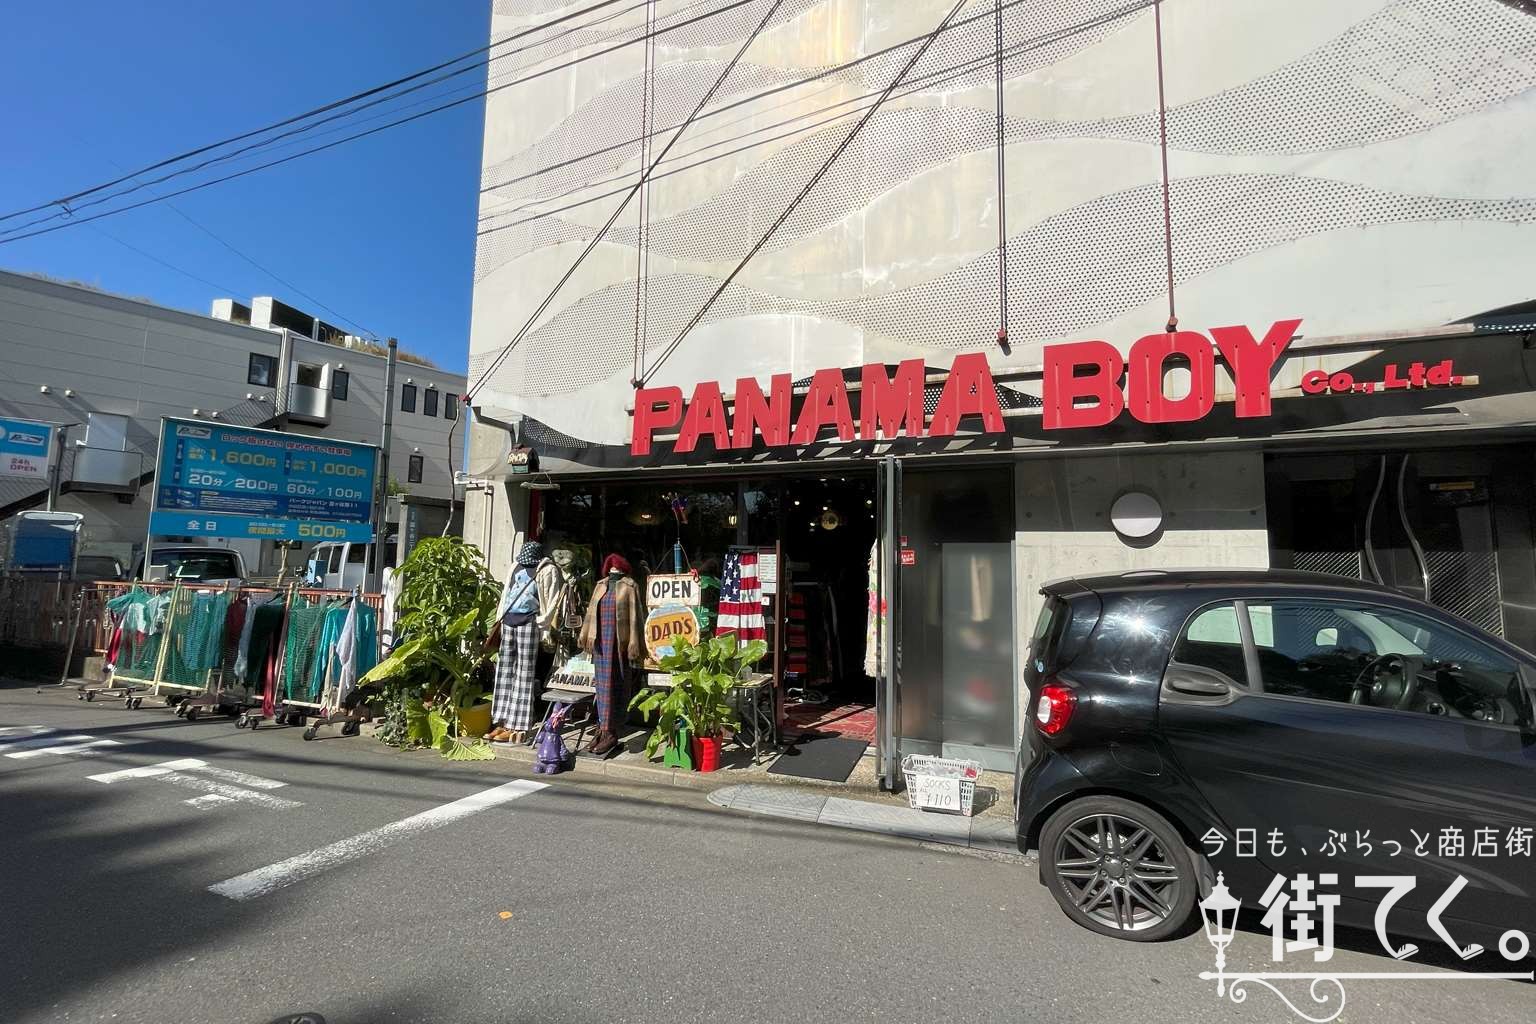 PANAMA BOY富ヶ谷店